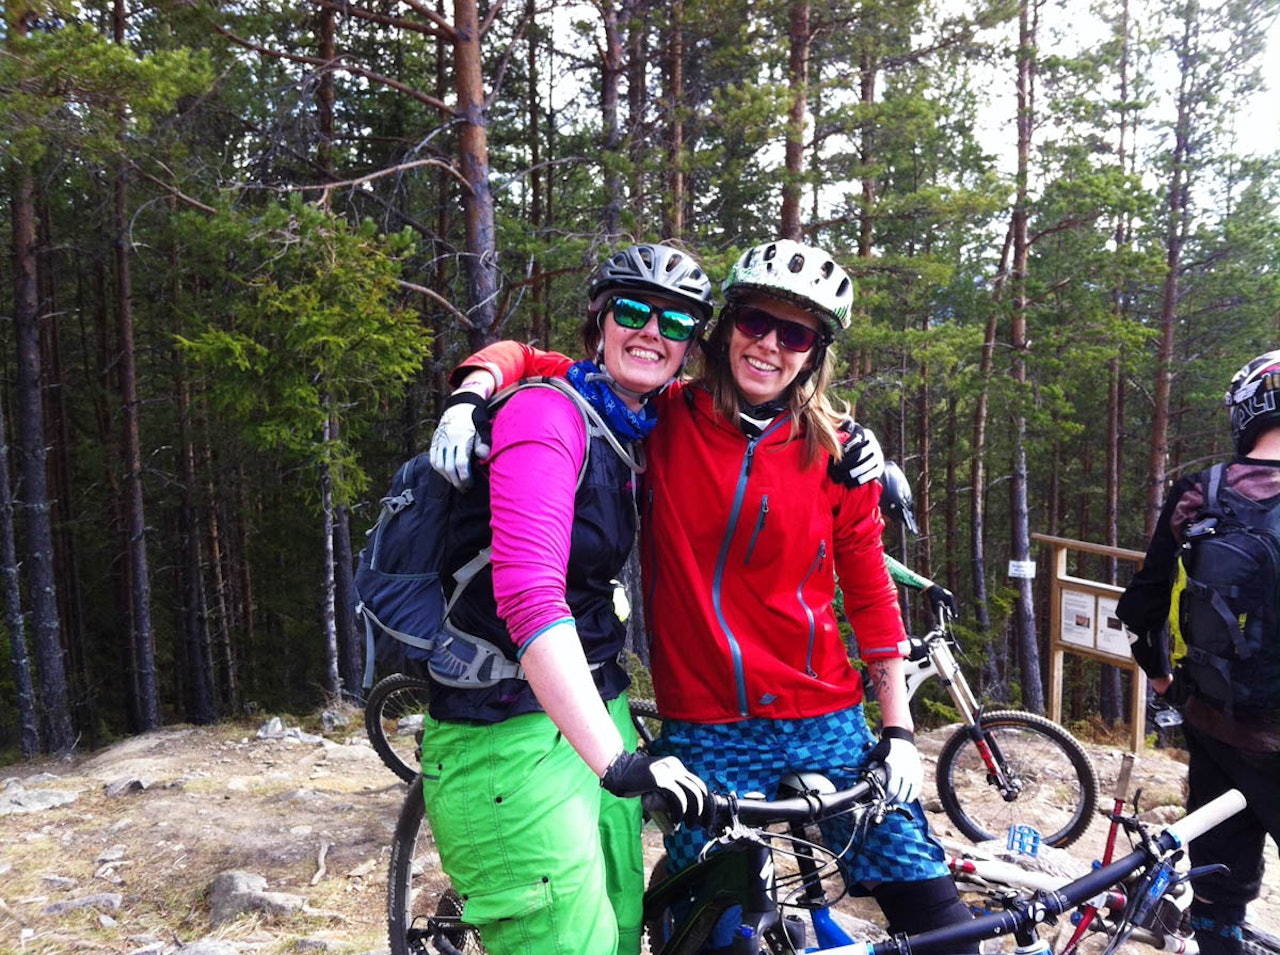 KUN FOR JENTER:Kaja Marienborg (venstre), Martine Walbye(høyre) og Trude Elde (ikke avbildet) ønsker å samle flere jenter til sykkelcamp.